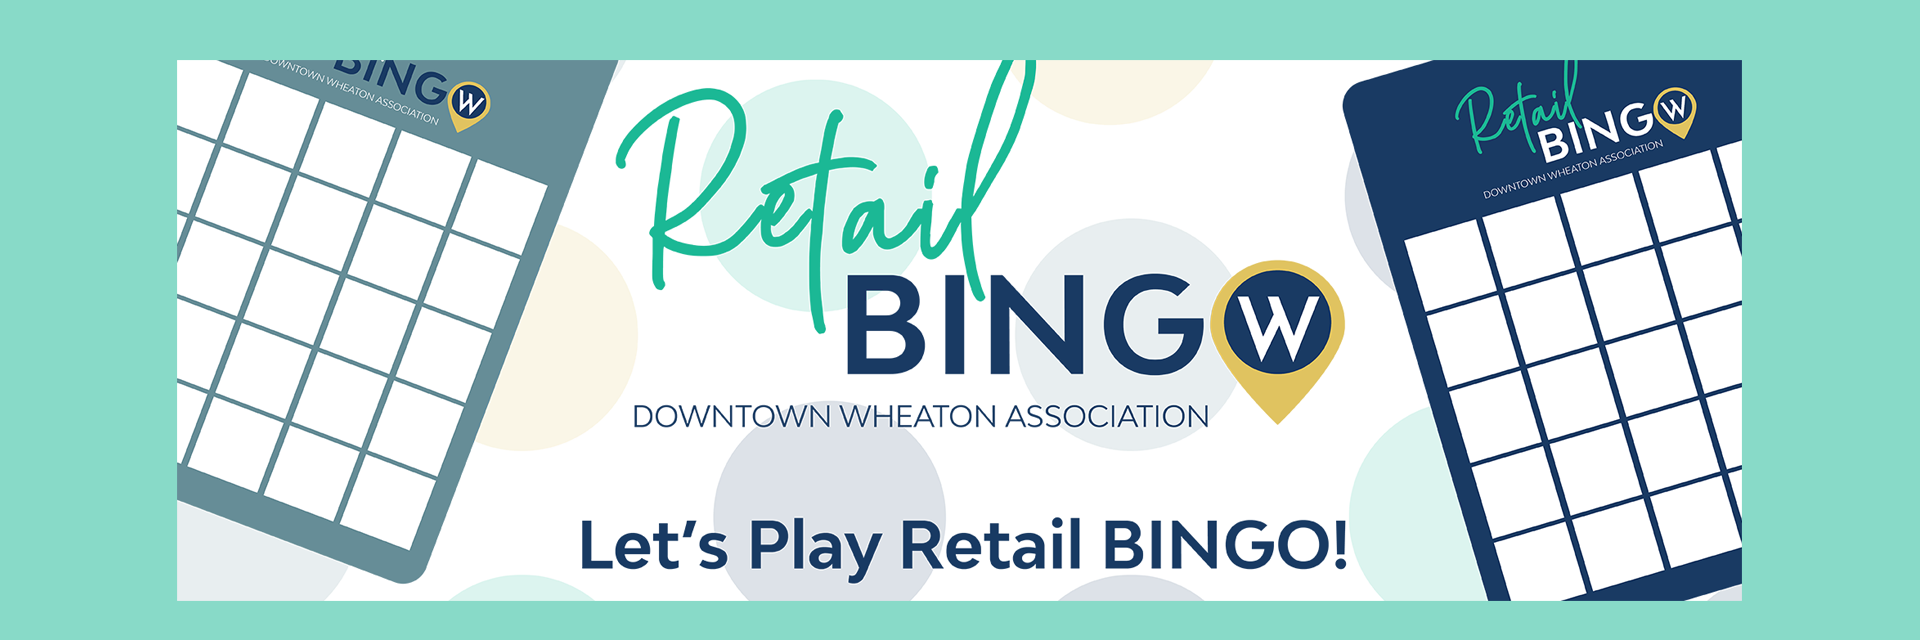 Retail Bingo-Downtown Wheaton